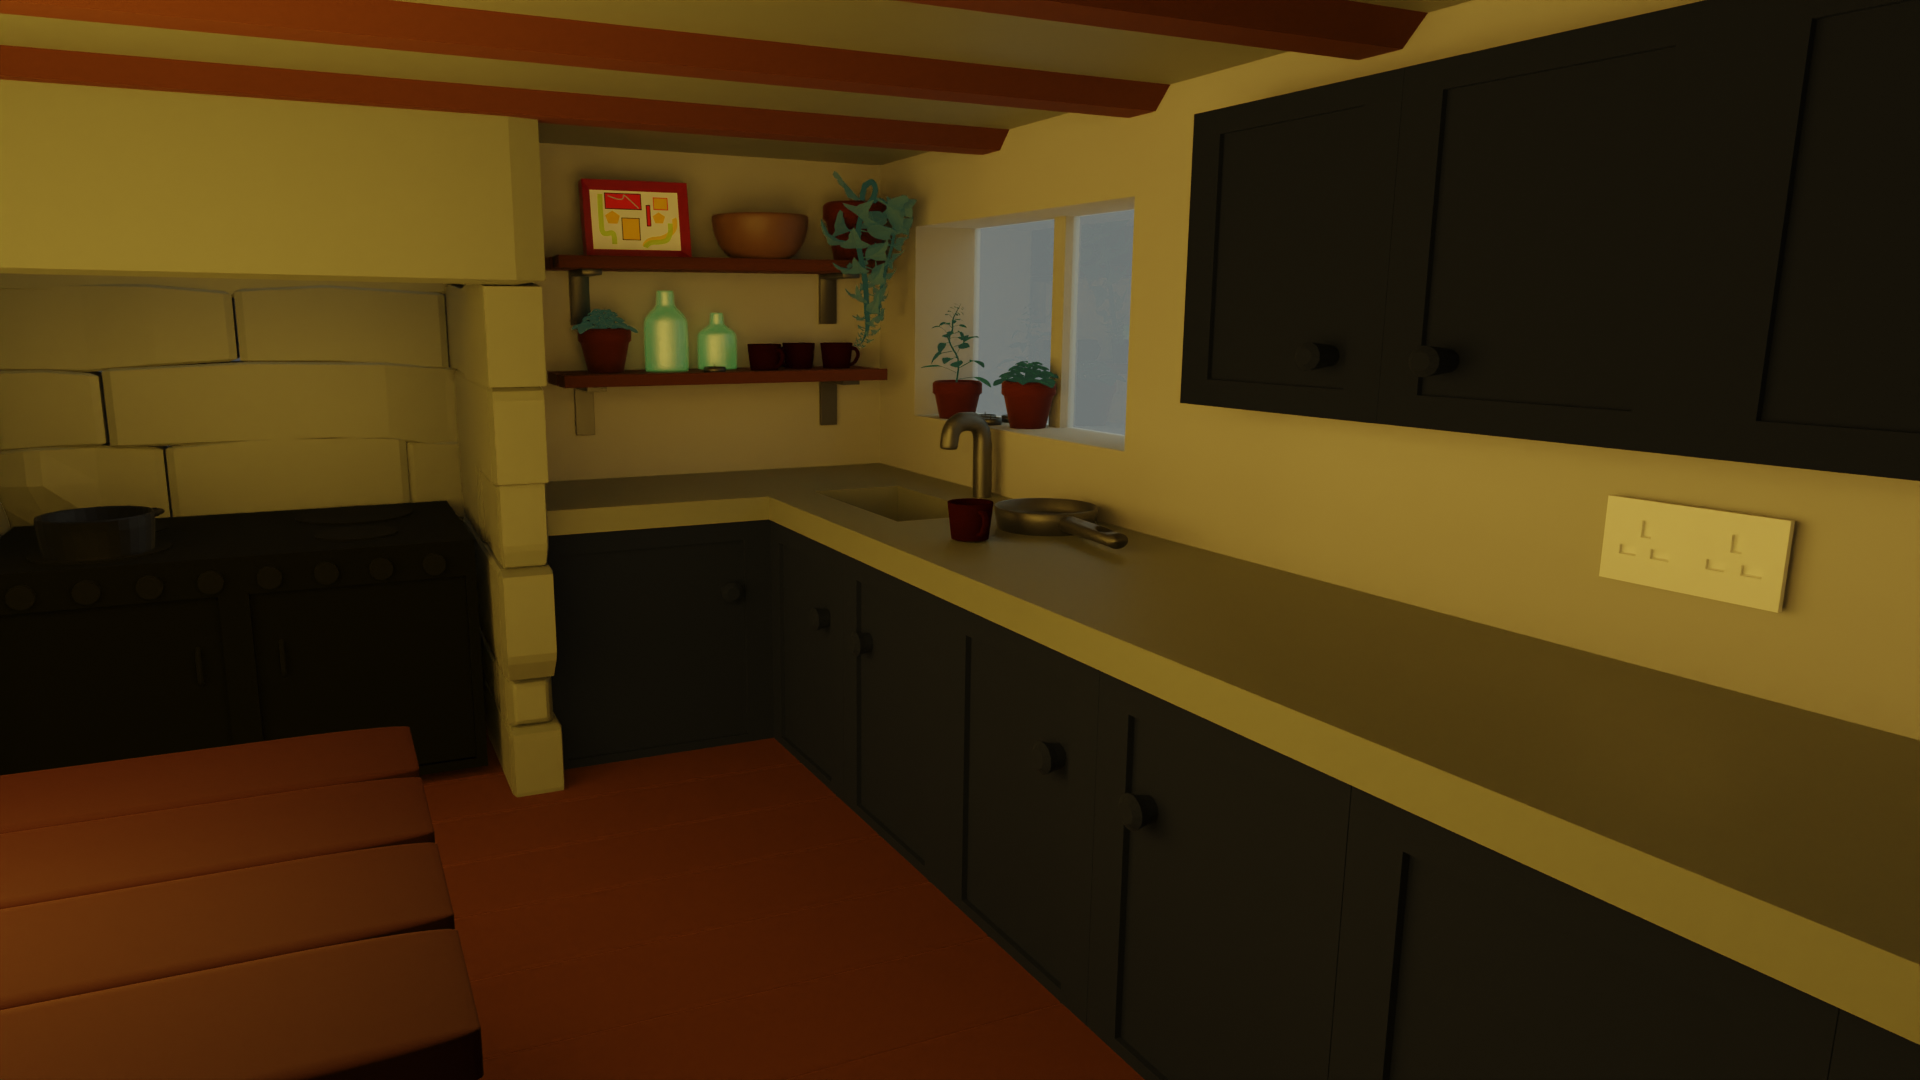 3D kitchen scene